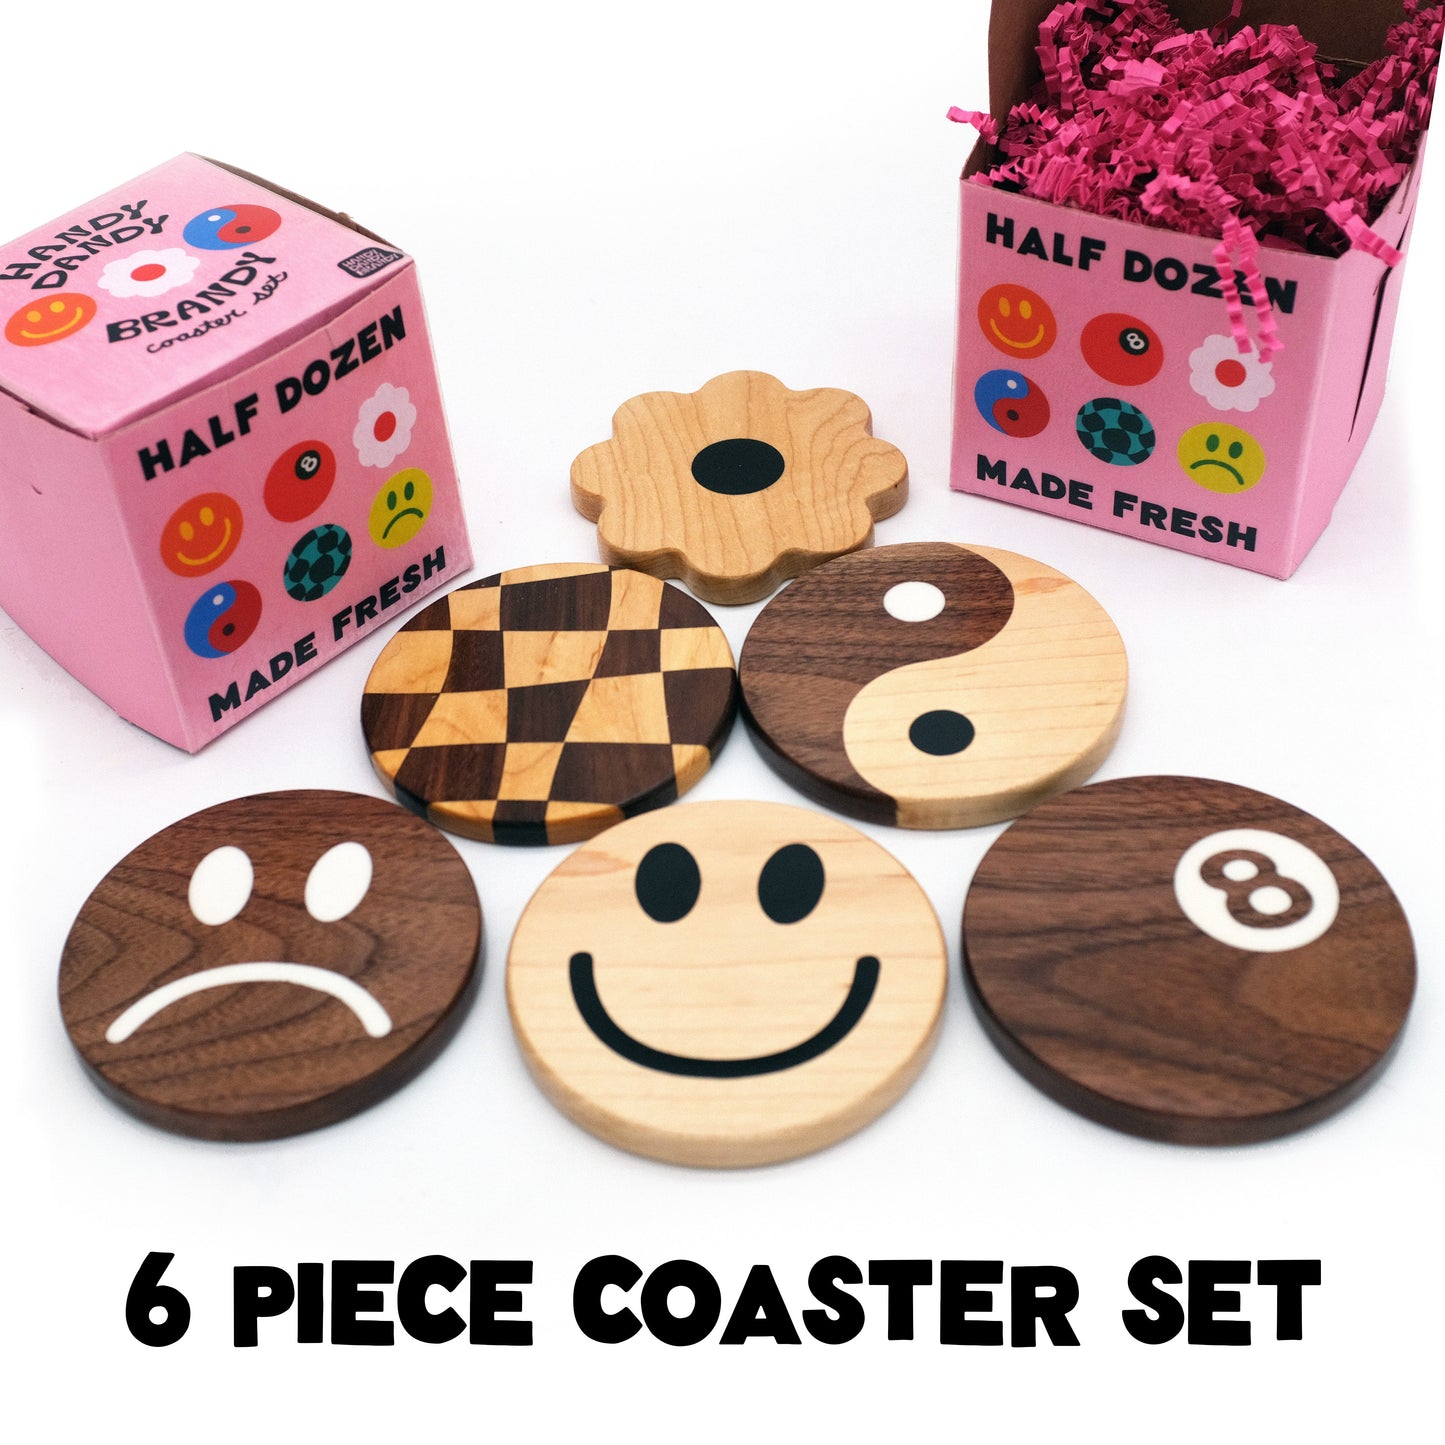 6 Piece Coaster Set